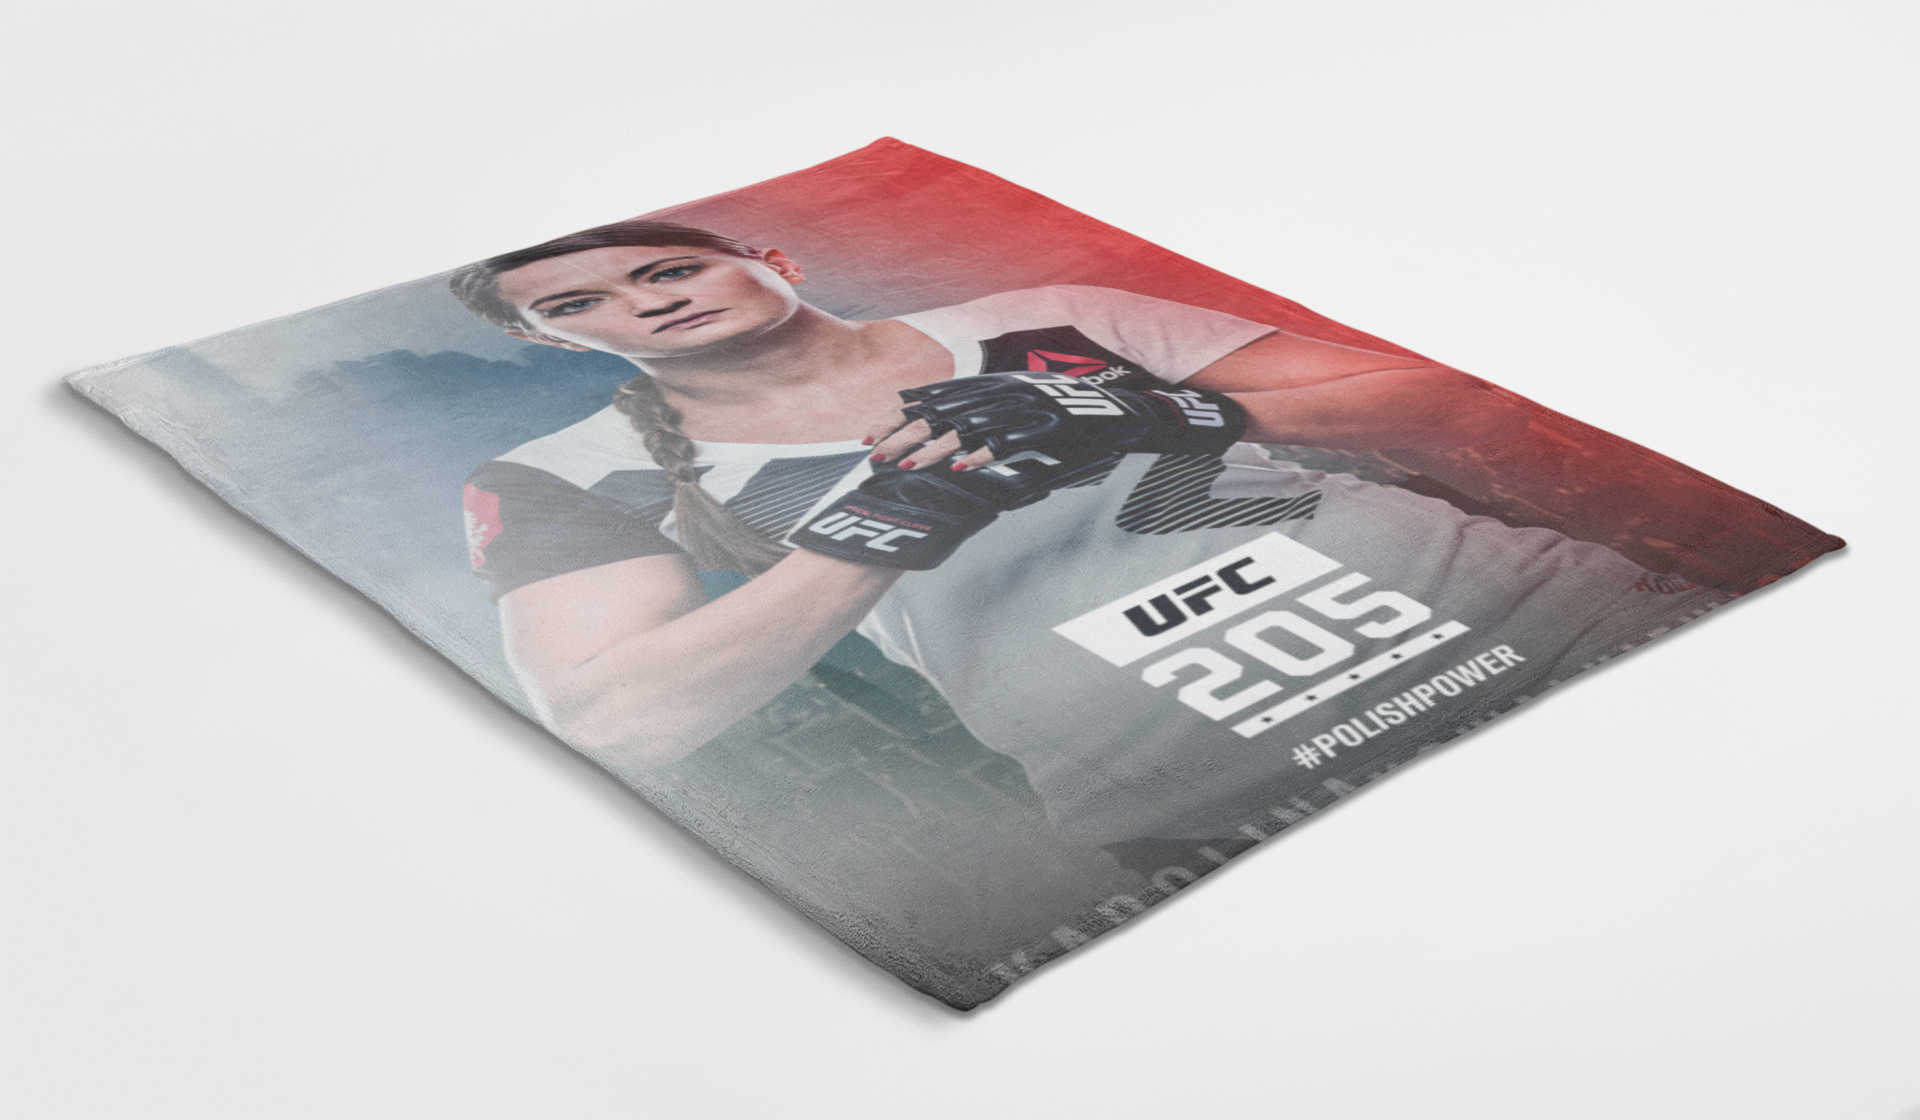 Karolina Kowalkiewicz UFC 2015 Polishpower Blanket